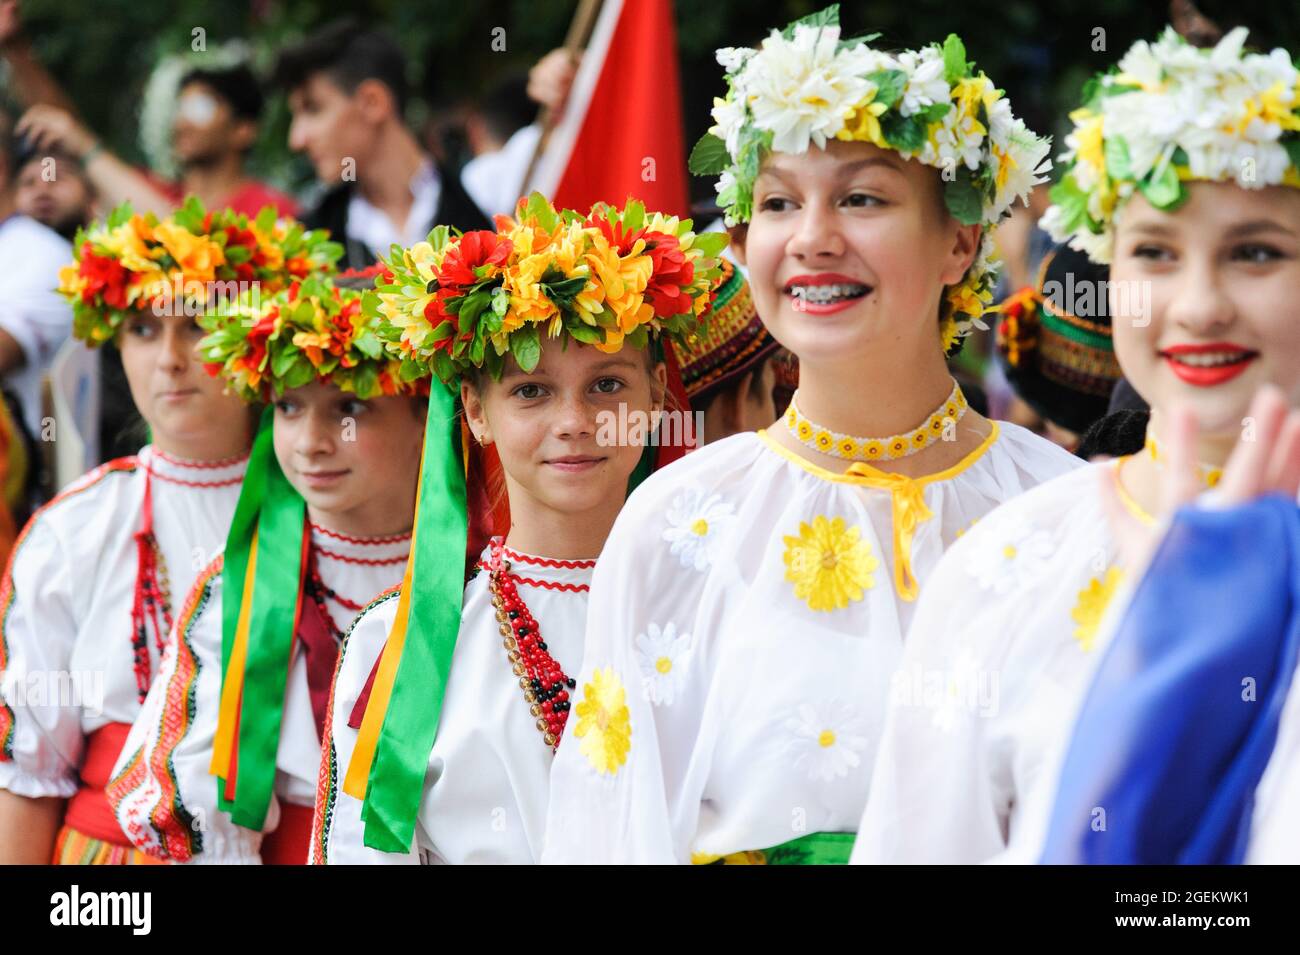 Las mujeres ucranianas con ropa tradicional caminan por la calle durante el  Festival Internacional de Folklore Etnovyr 2021 en el oeste de Ucrania.  Grupos folklóricos de diferentes partes del mundo presentan la